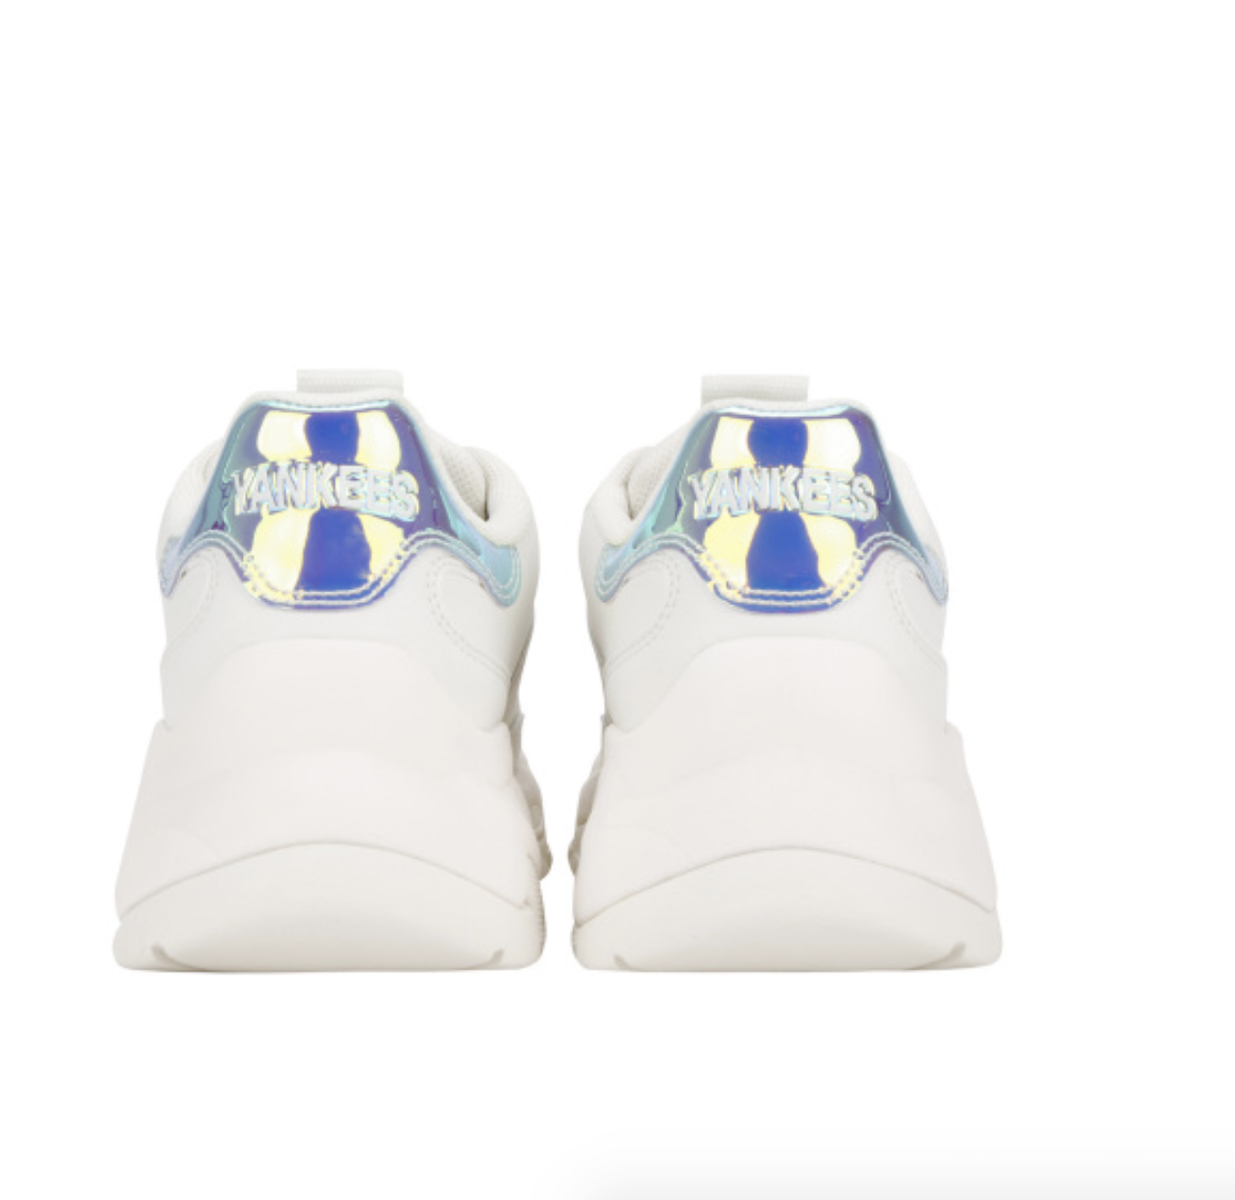 Giày Sneaker Hội An on Instagram Nhà có 3 nàng tiên với gót Hologram   𝗠𝗟𝗕 𝗖𝗵𝘂𝗻𝗸𝘆 𝗦𝗵𝗶𝗻𝘆  Xem thêm hình tại sneakerhoianmlb   mlb giay giaythethao